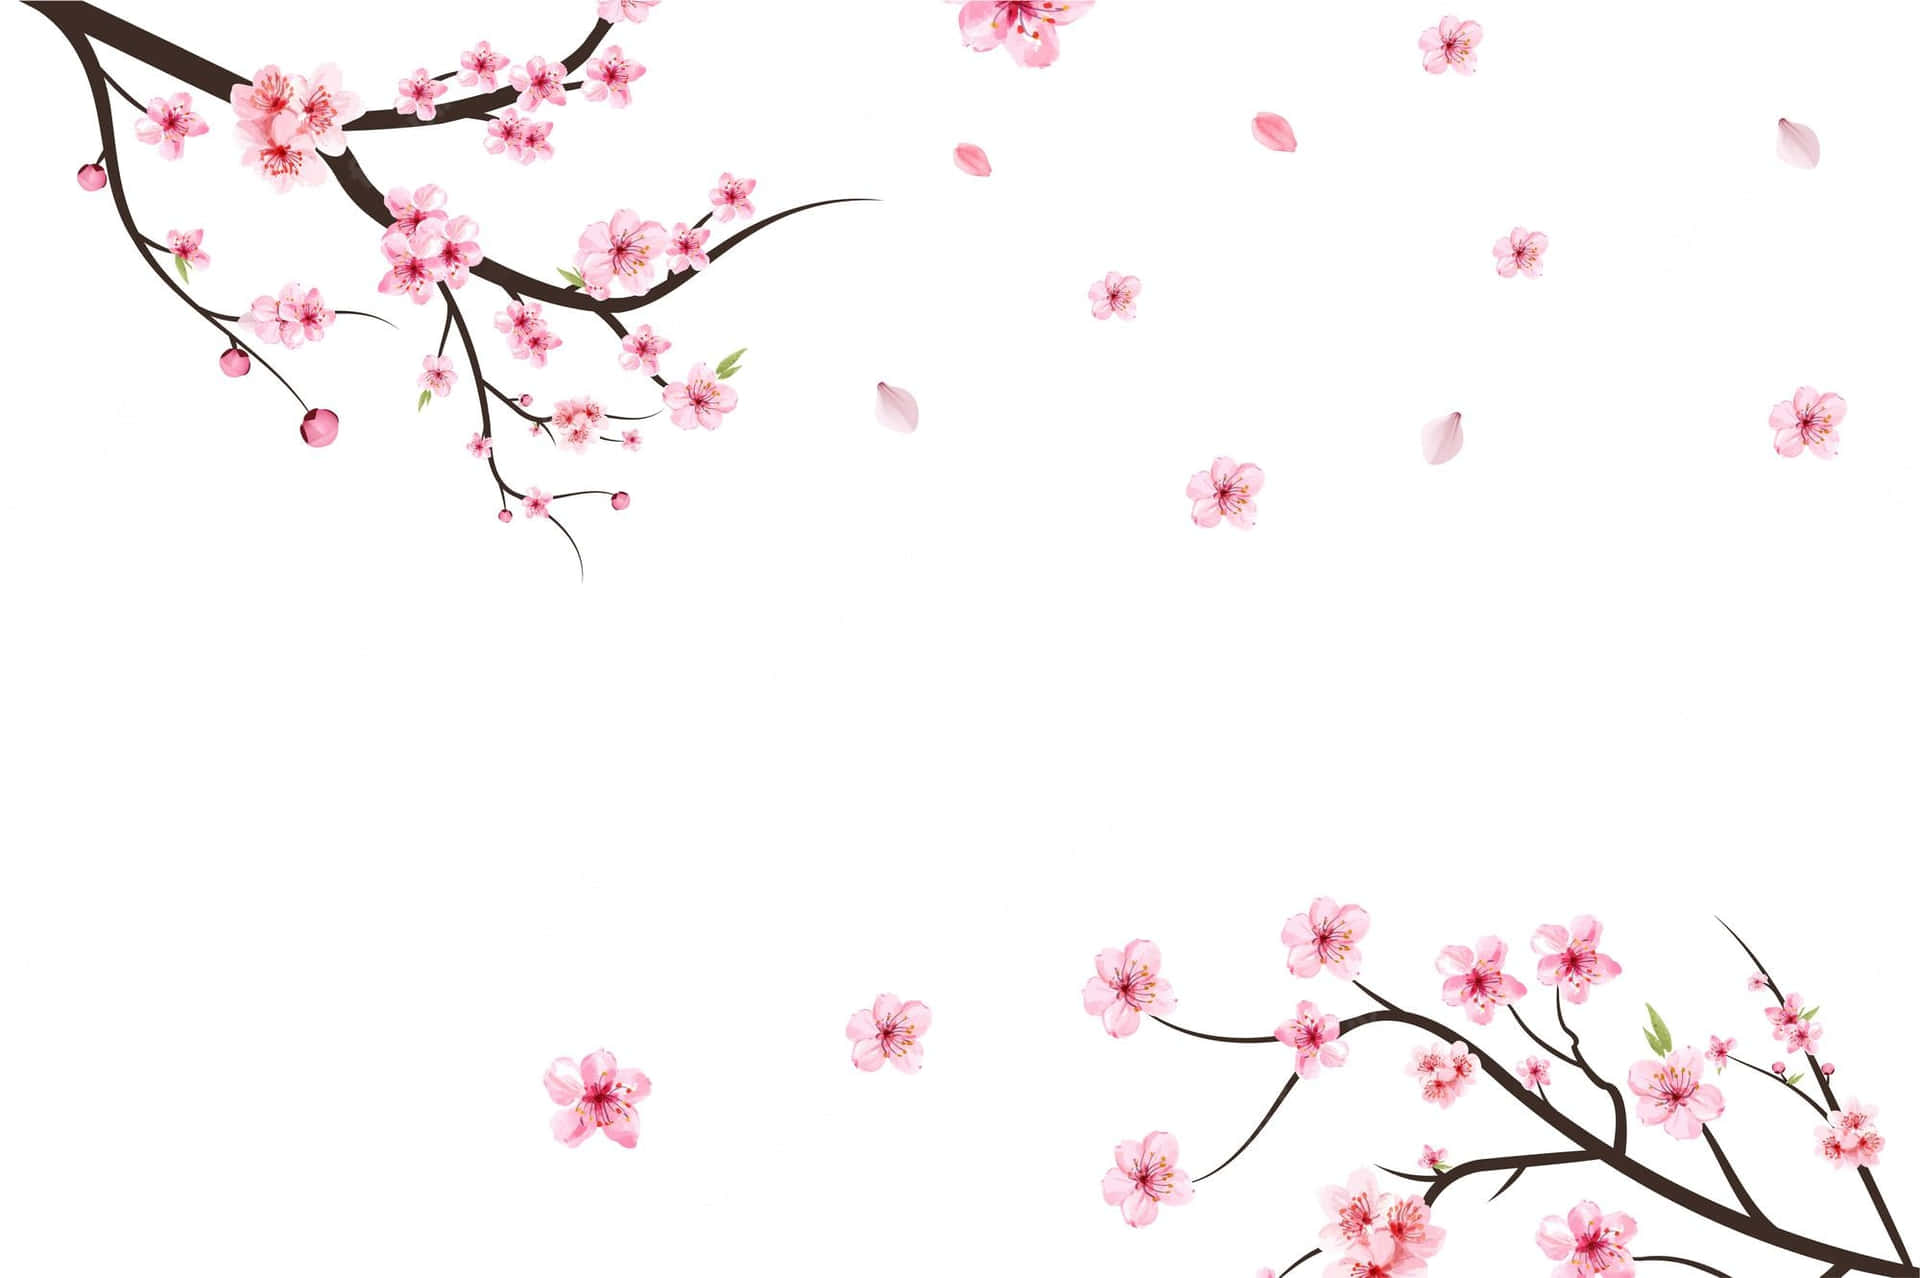 A field of sakura blossom trees in full bloom. Wallpaper